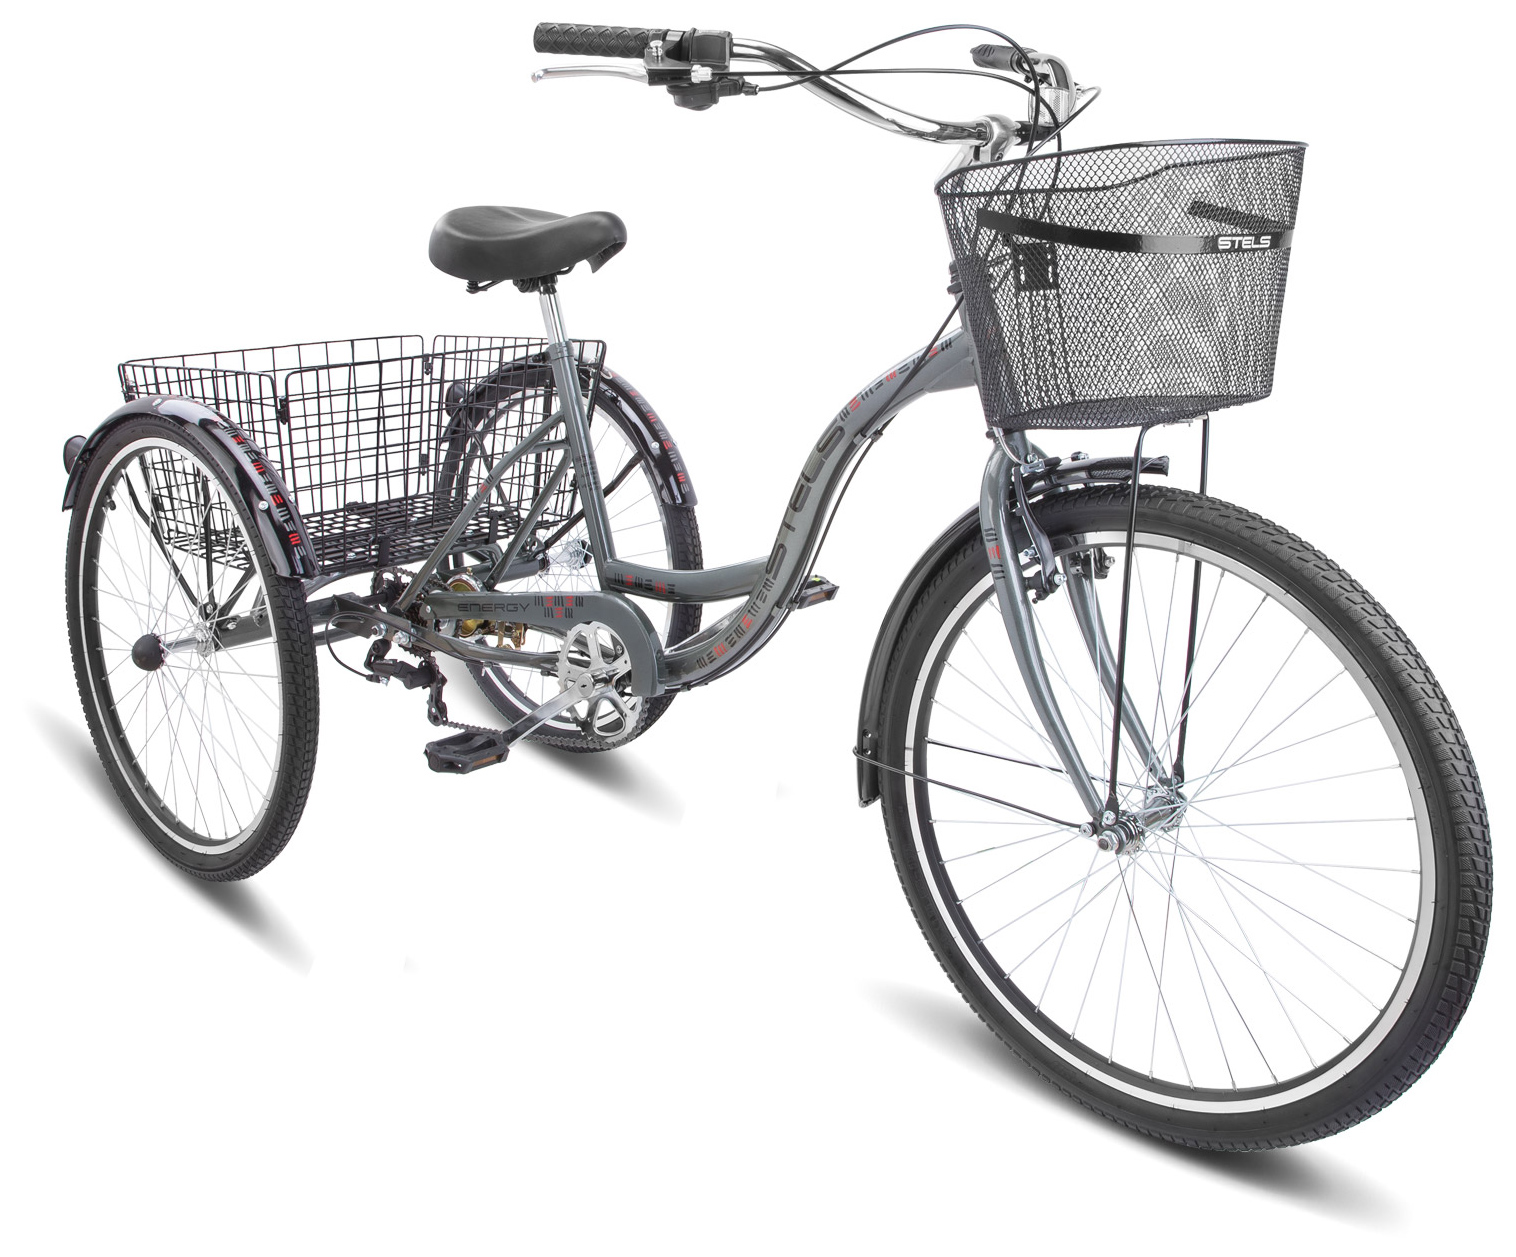  Отзывы о Городском велосипеде Stels Energy VI 26 (V010) 2019